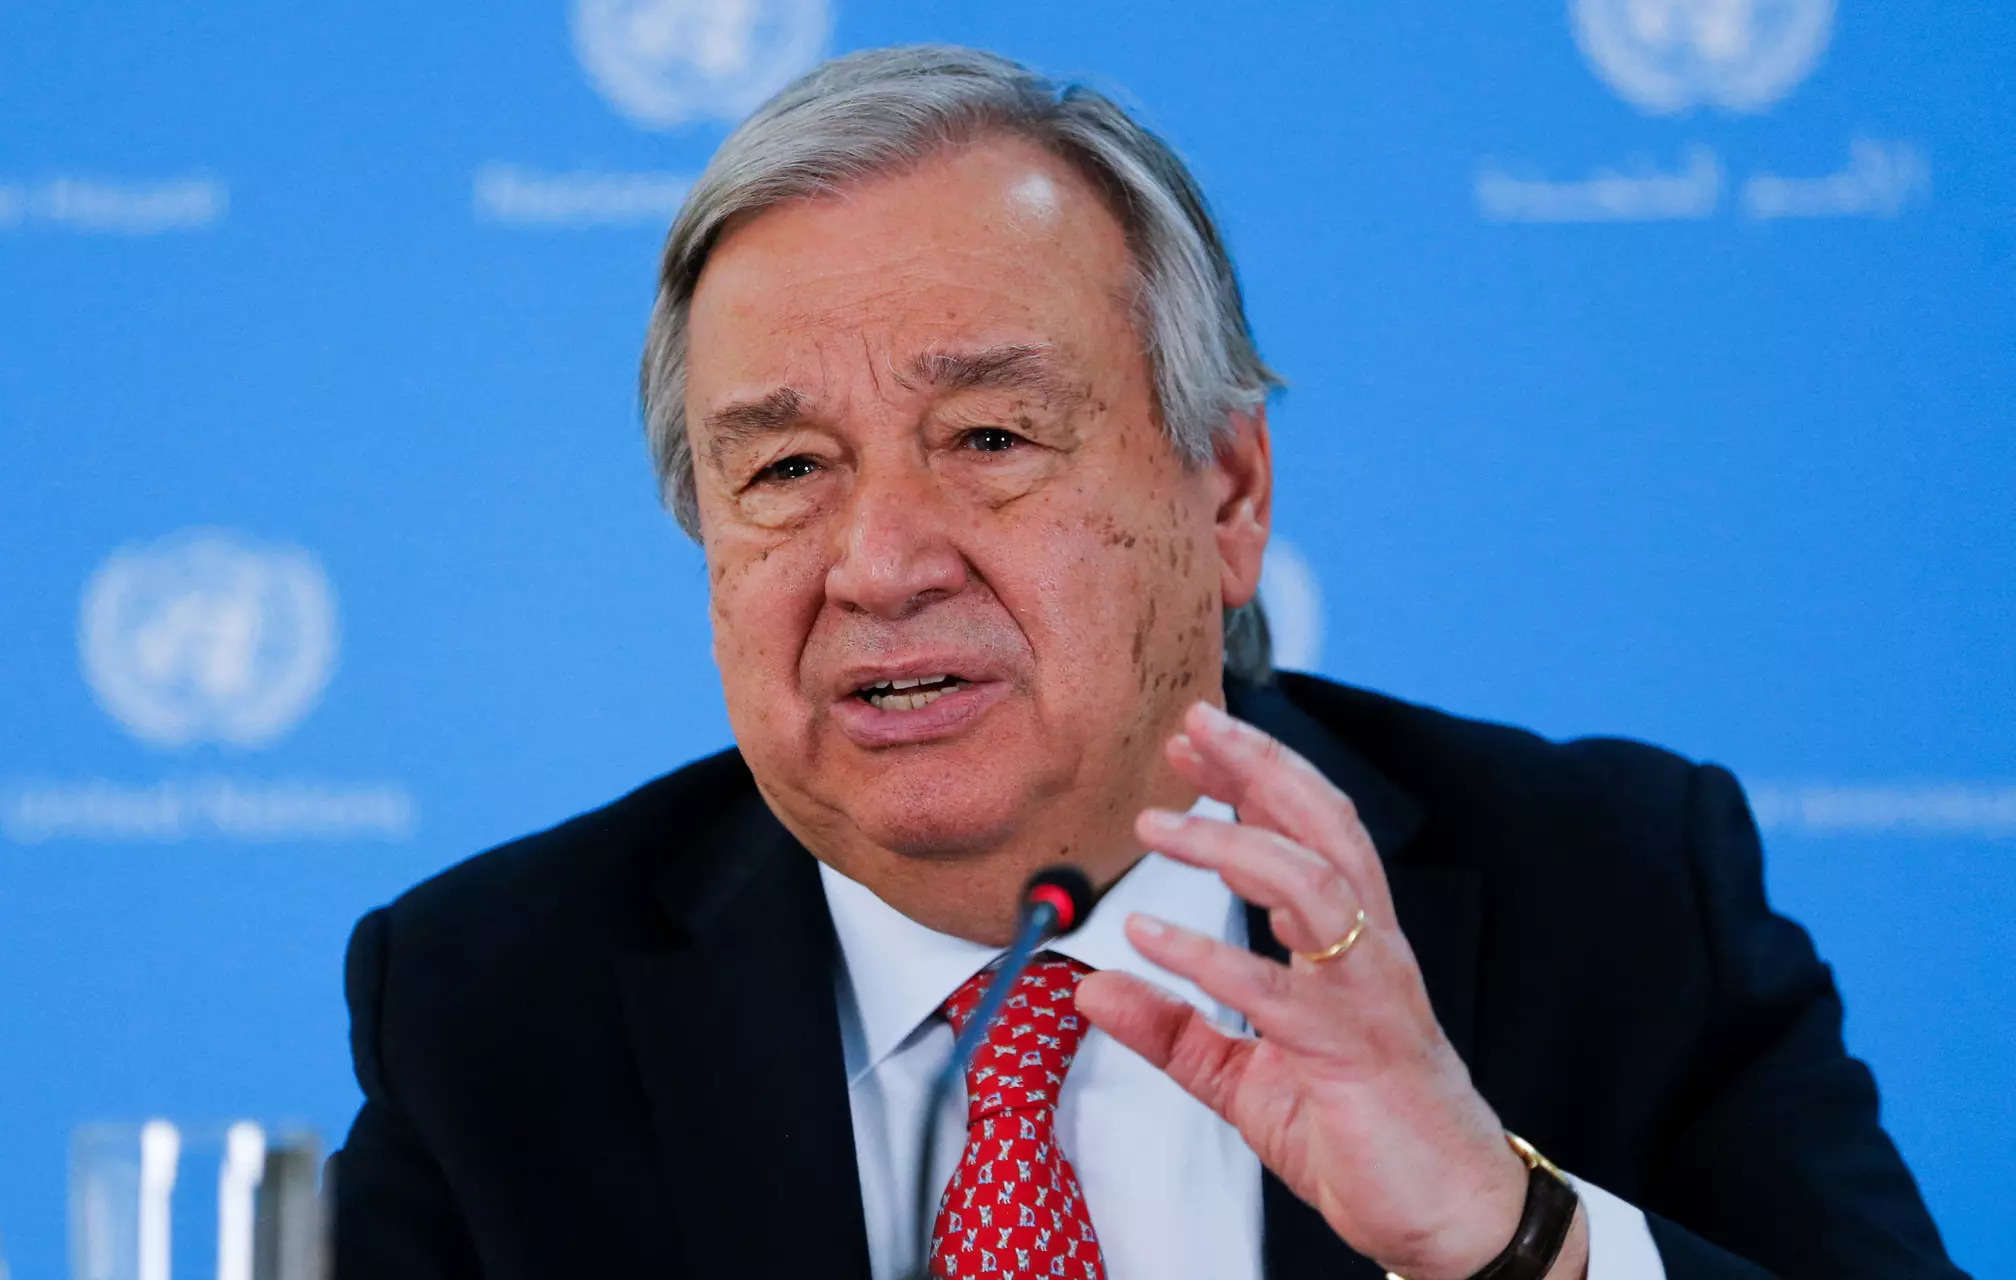 BM Genel Sekreteri Guterres: “Yapay Zeka için birlikte çalışmalıyız”